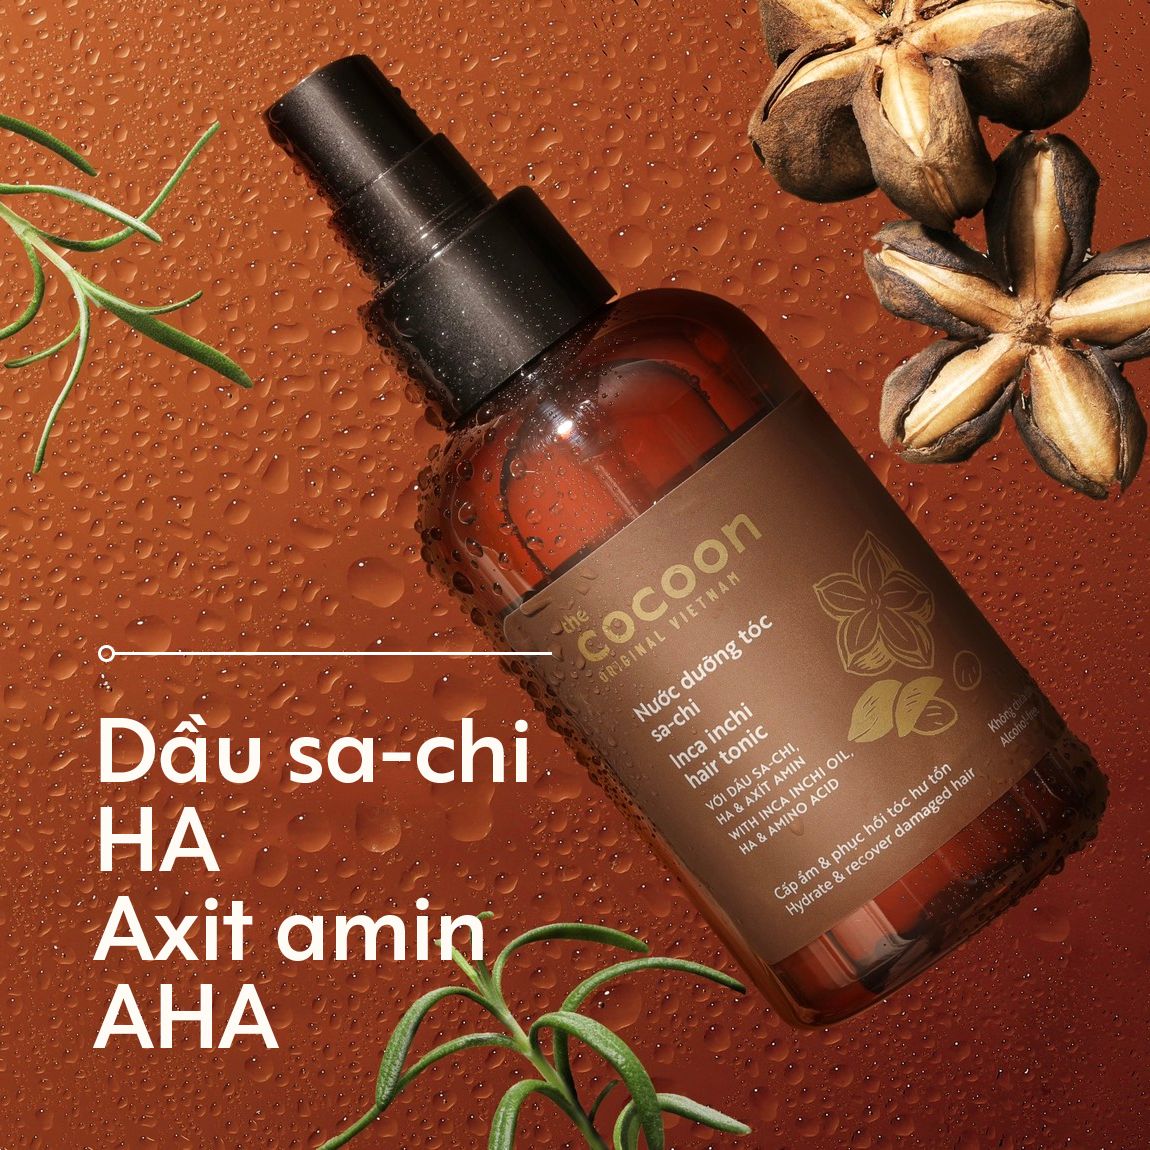 Nước dưỡng tóc Sa-chi Cocoon giúp cấp ẩm và phục hồi hư tổn 140ml